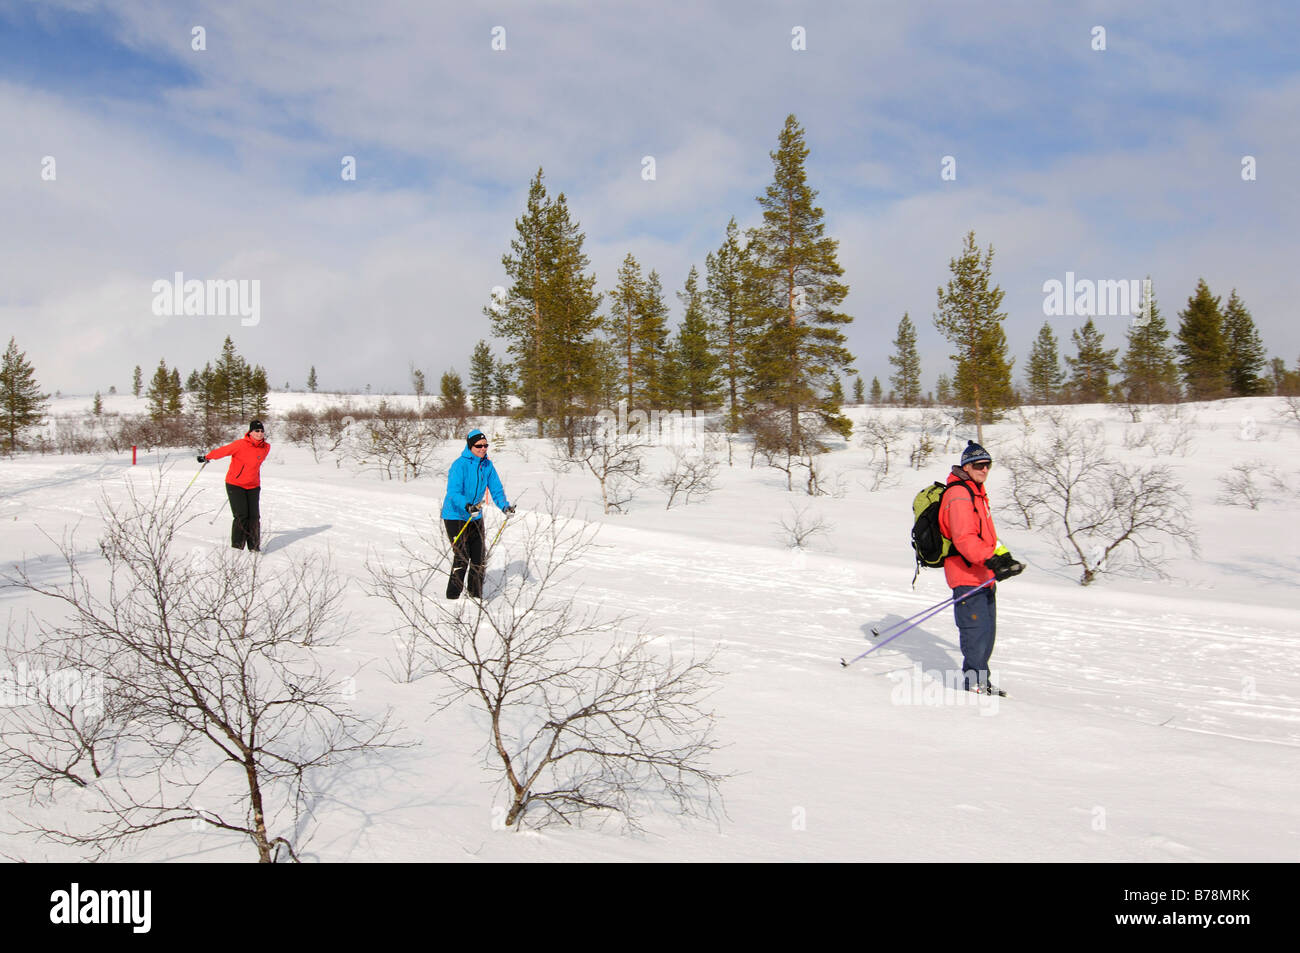 Ski nordique, du ski de fond dans le parc national Urho Kekkonen, Kiilopaeae, Ivalo, Laponie, Finlande, Europe Banque D'Images